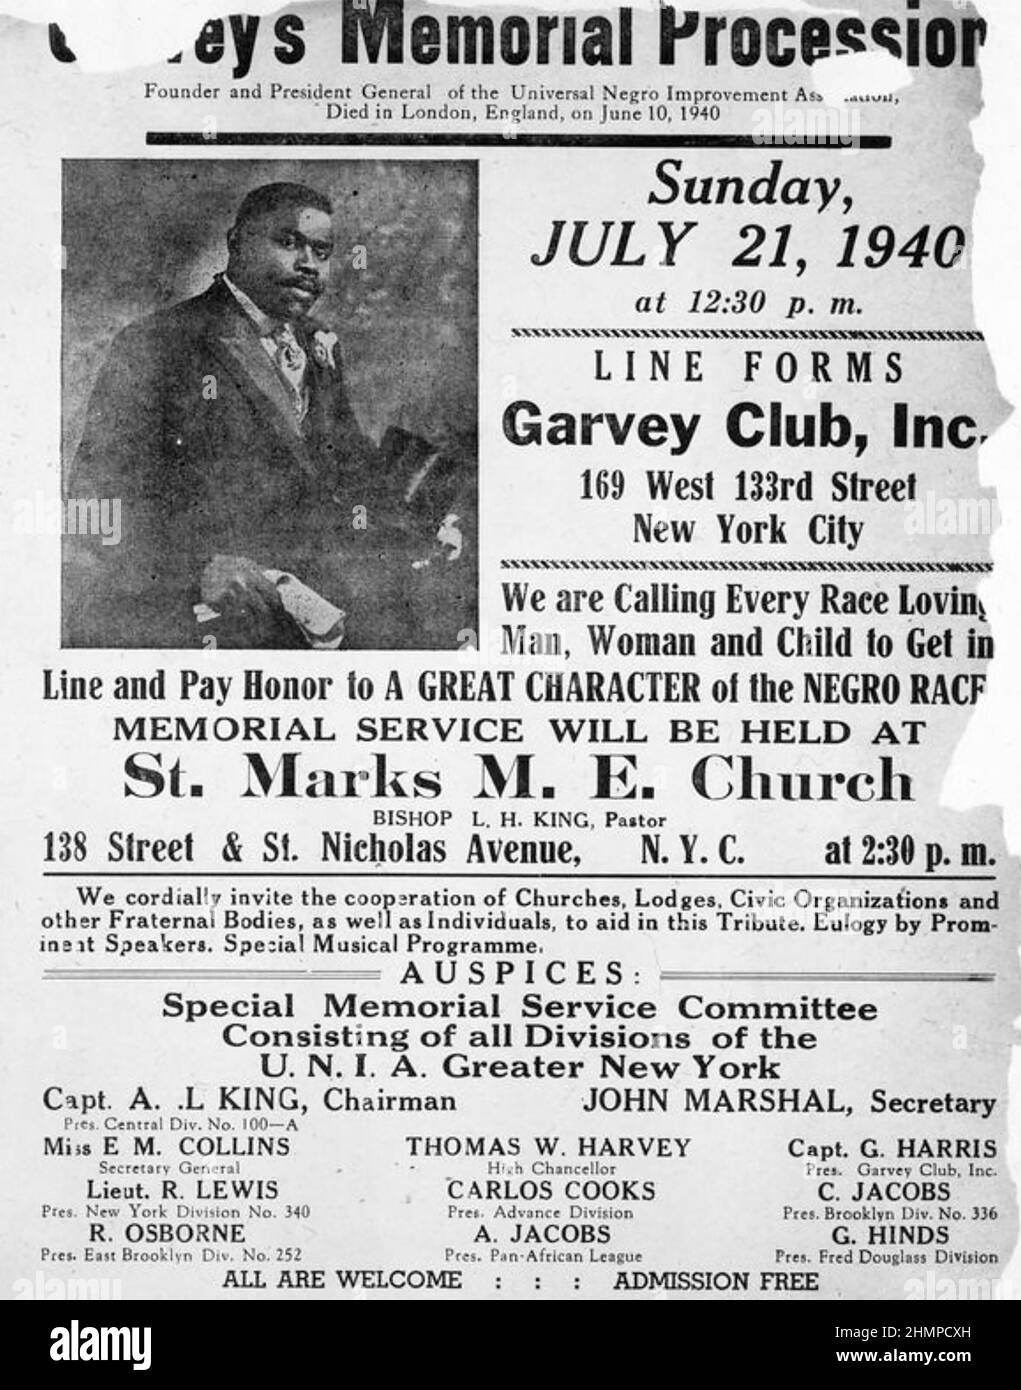 MARCUS GARVEY ( 1887-1940) Jamaikanischer Journalist, Verleger und politischer Aktivist starb am 10. Juni 1940. Plakat für eine New Yorker Gedenkprozession. Stockfoto